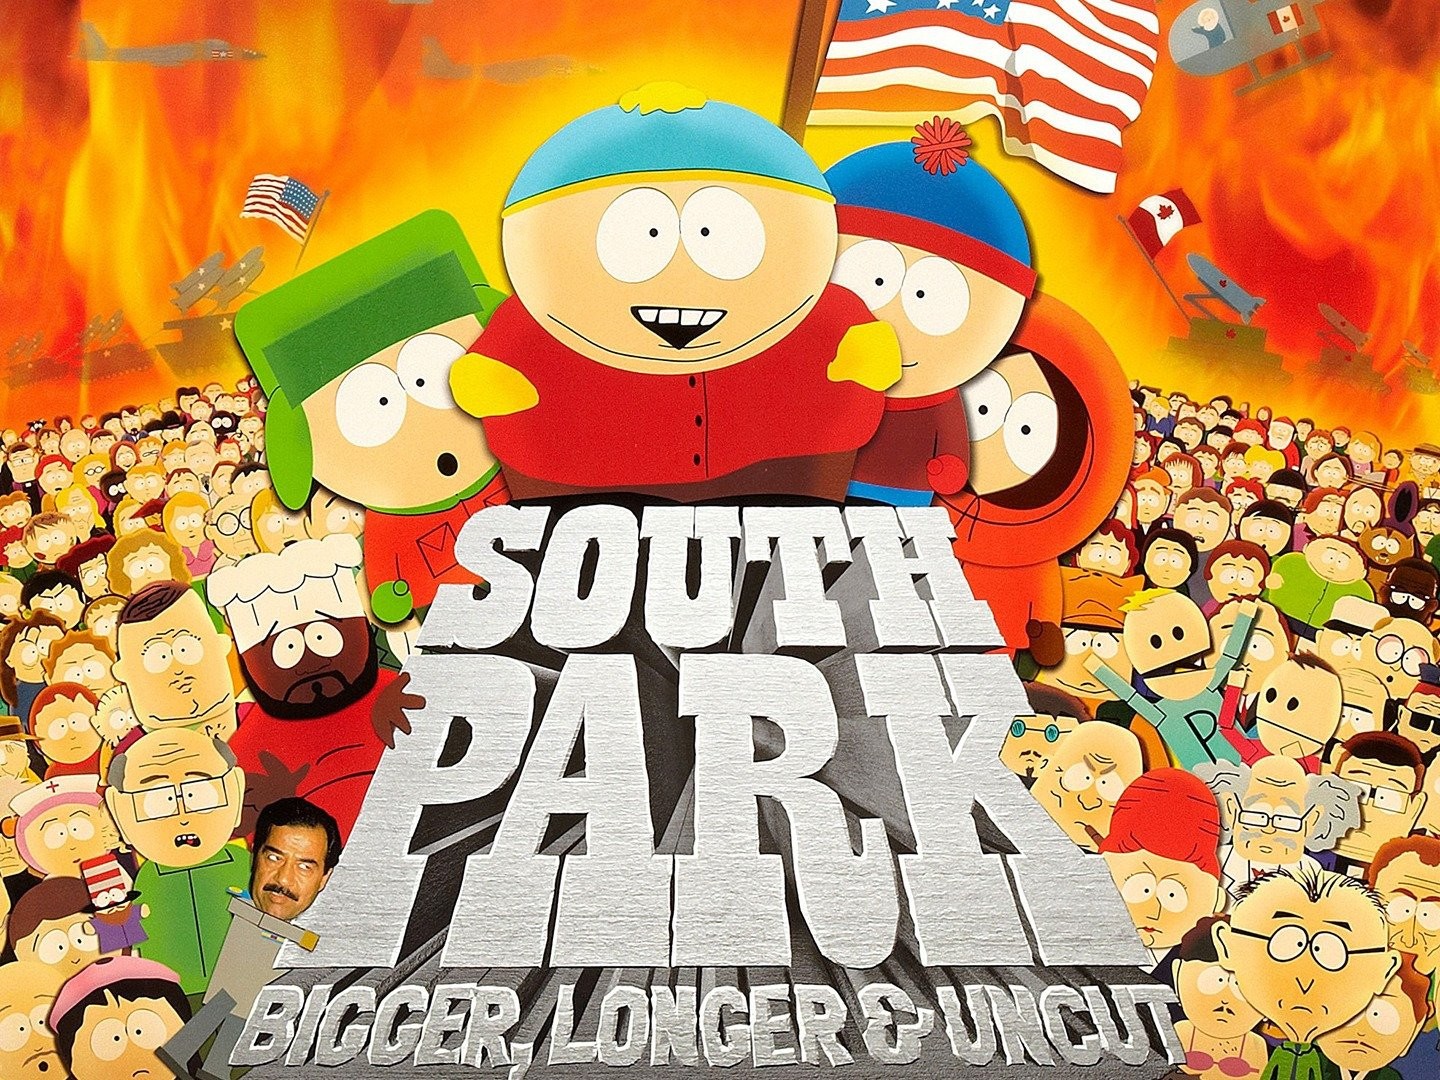 South Park: The Movie